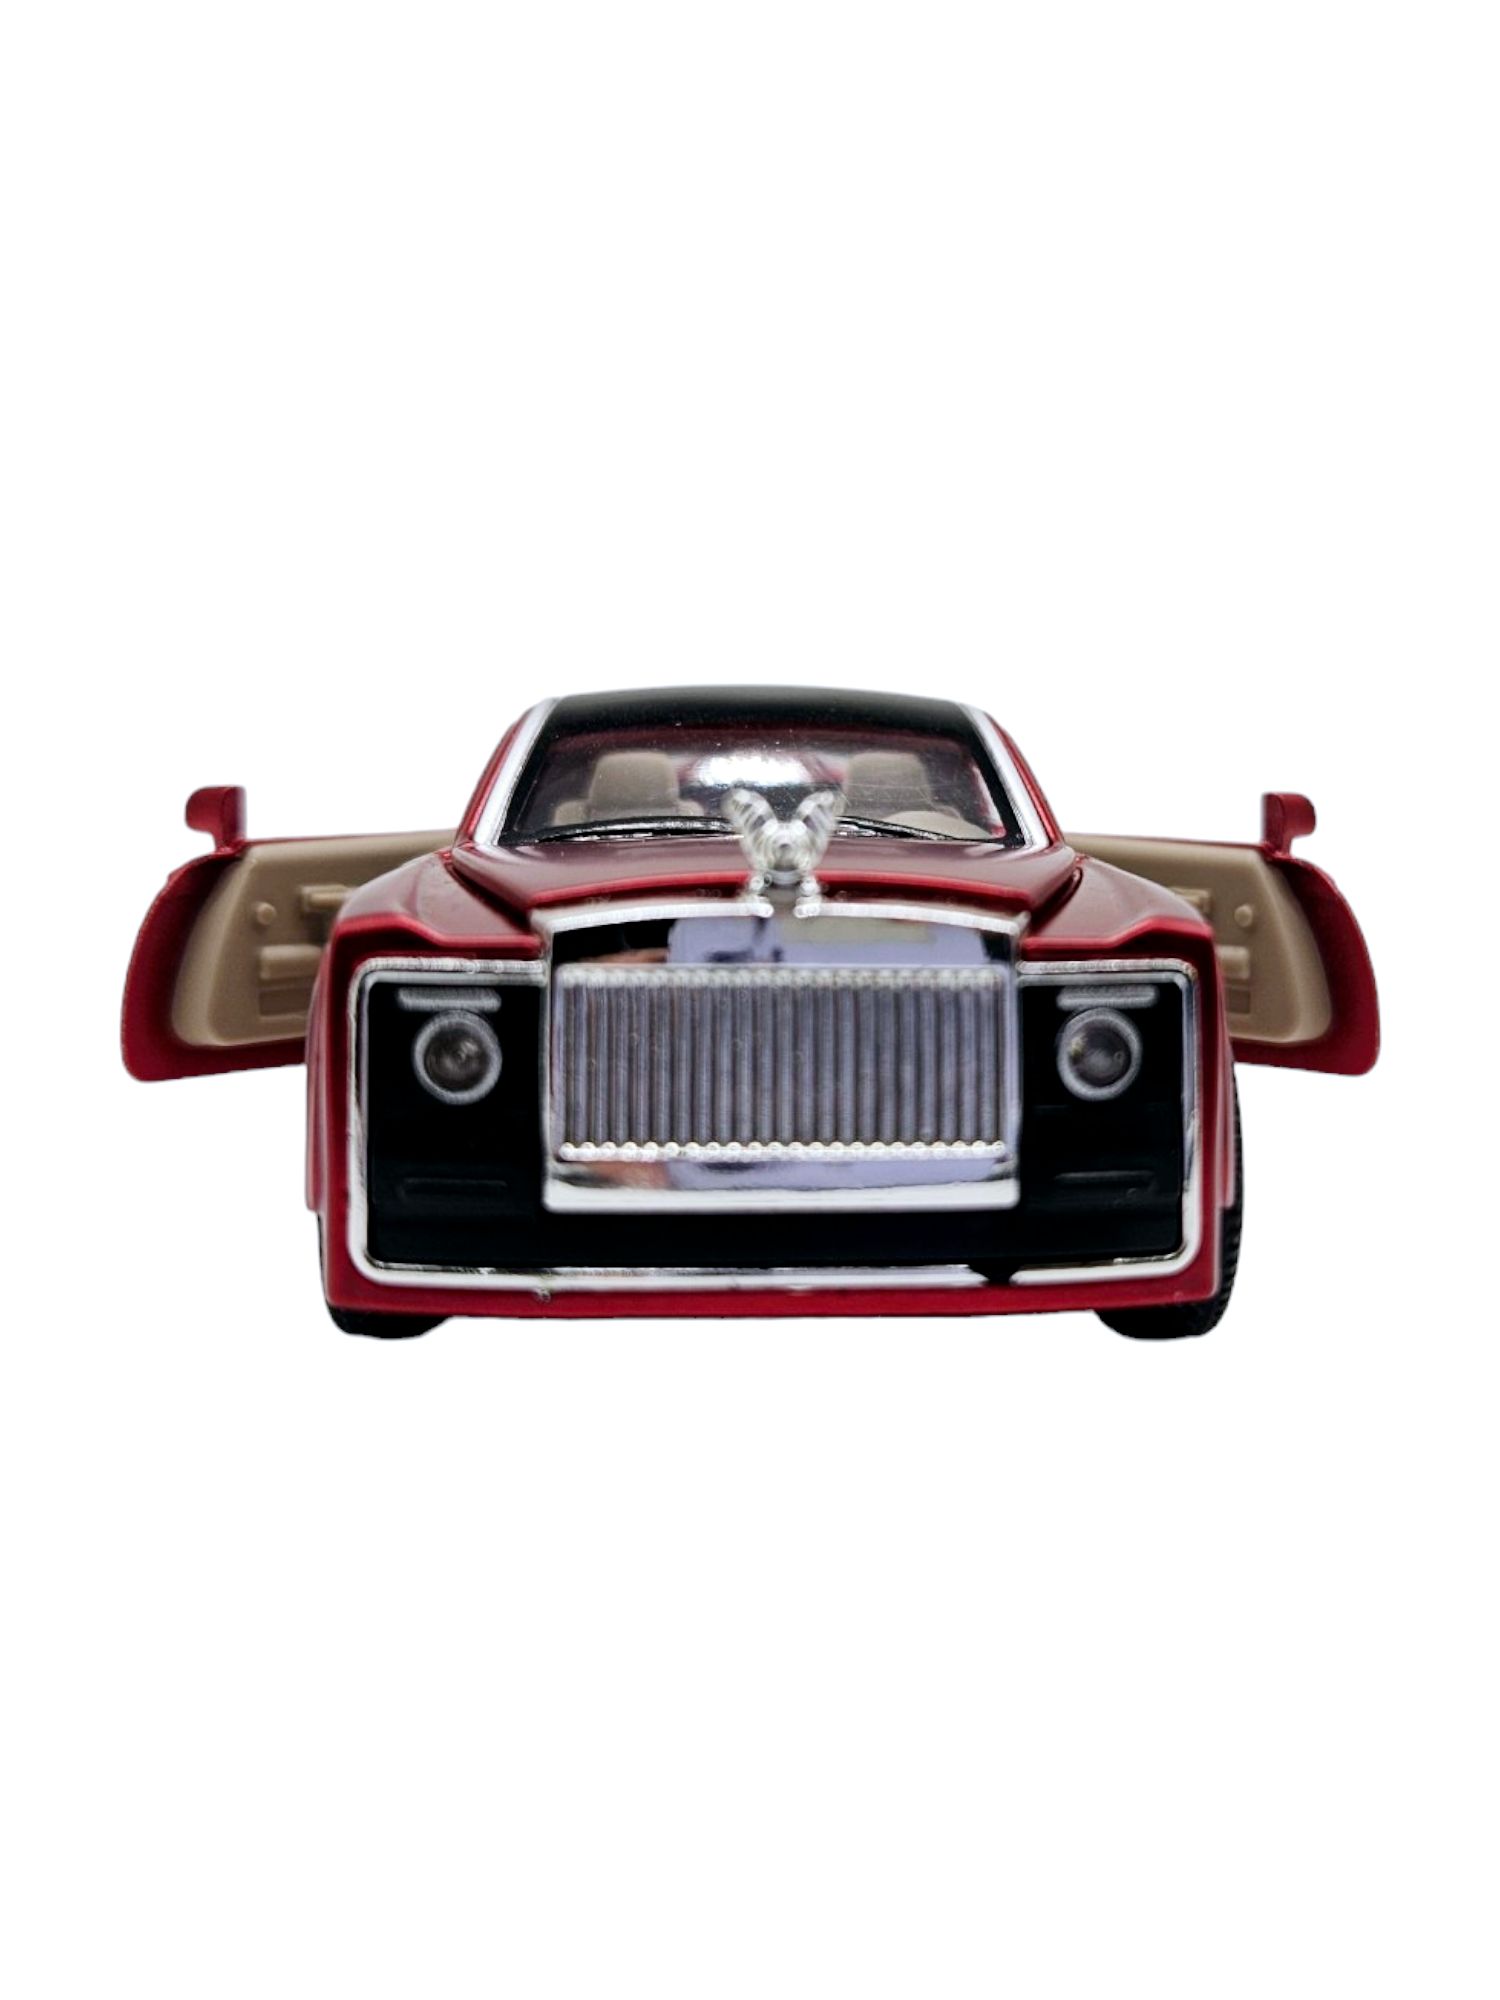 Masinuta metalica Rolls Royce, Sunete si lumini Rosu, 13cm